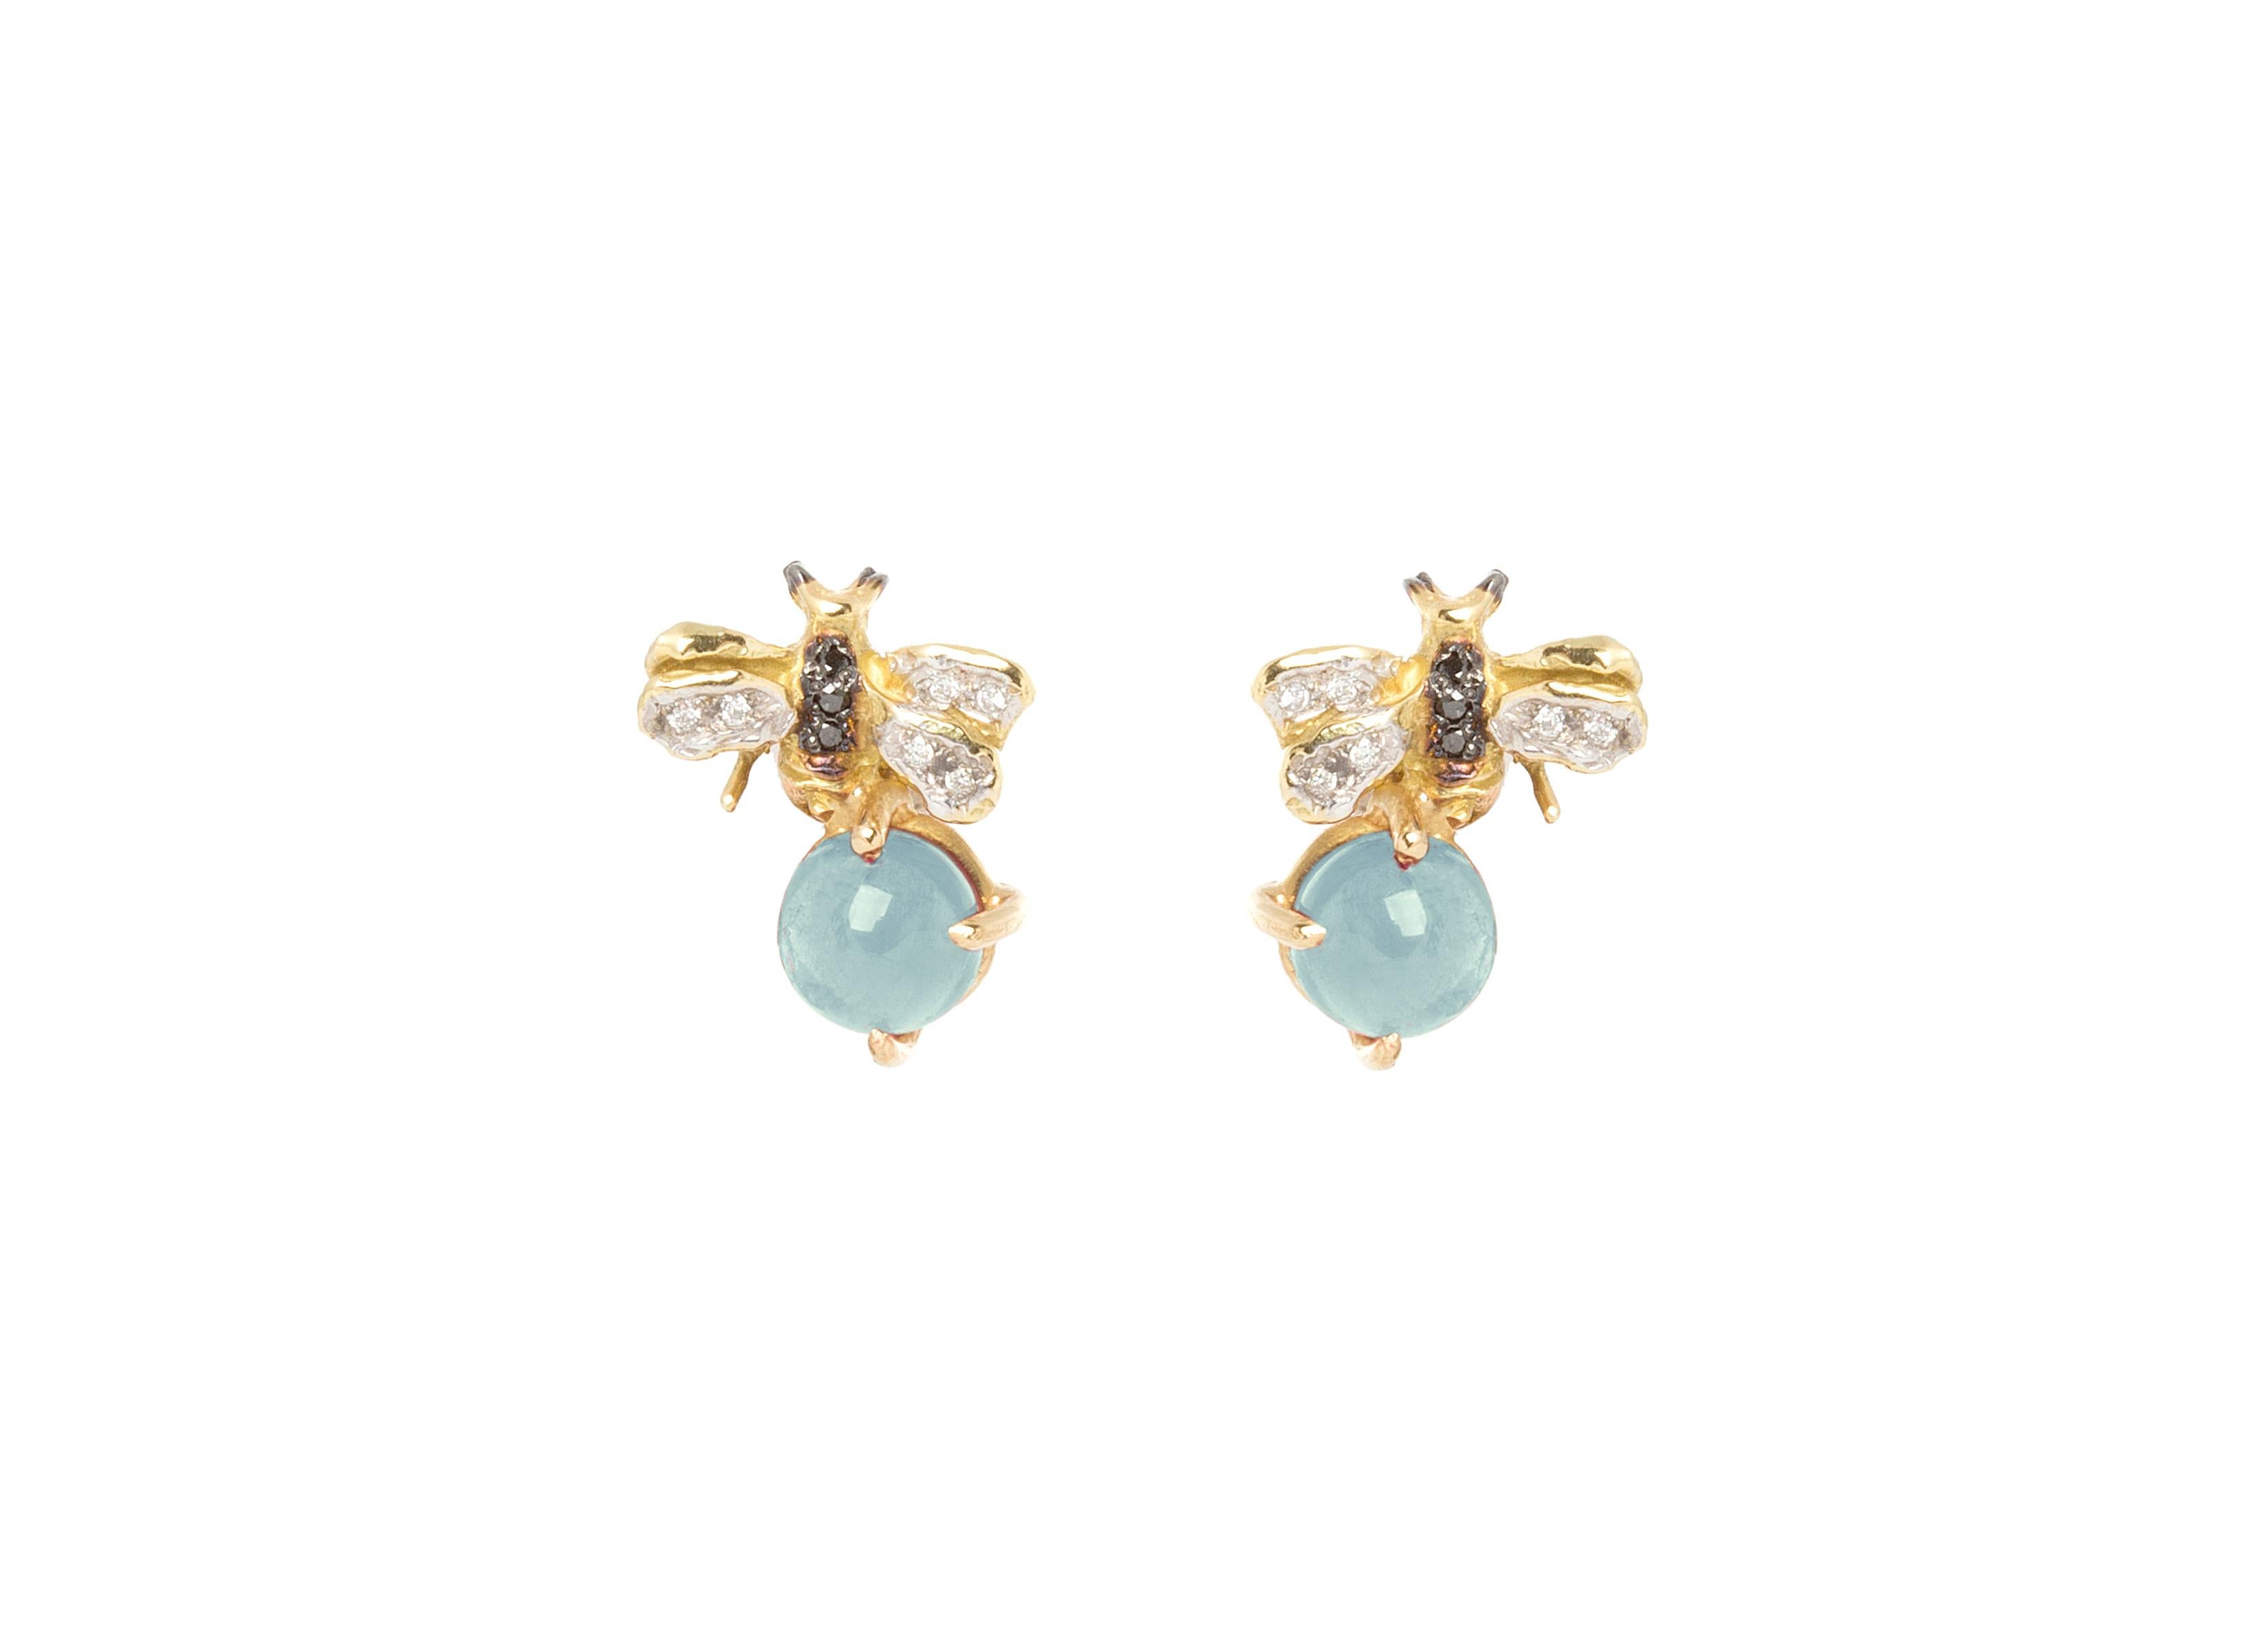 16 carat gold earrings